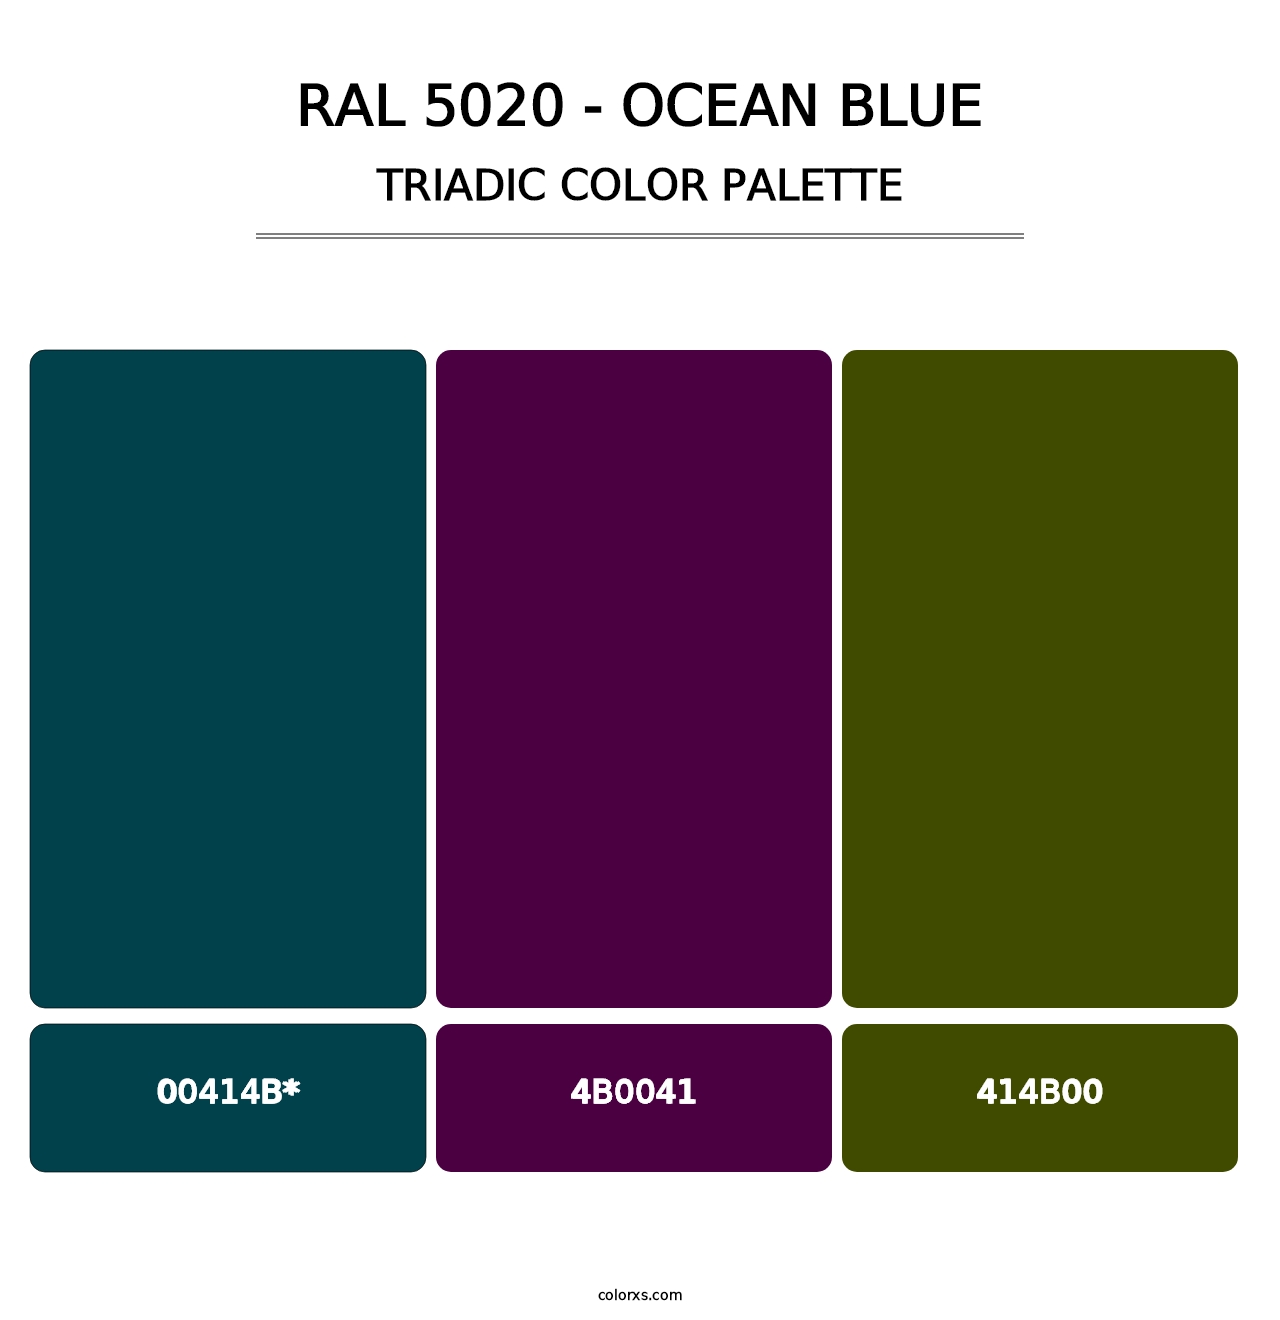 RAL 5020 - Ocean Blue - Triadic Color Palette